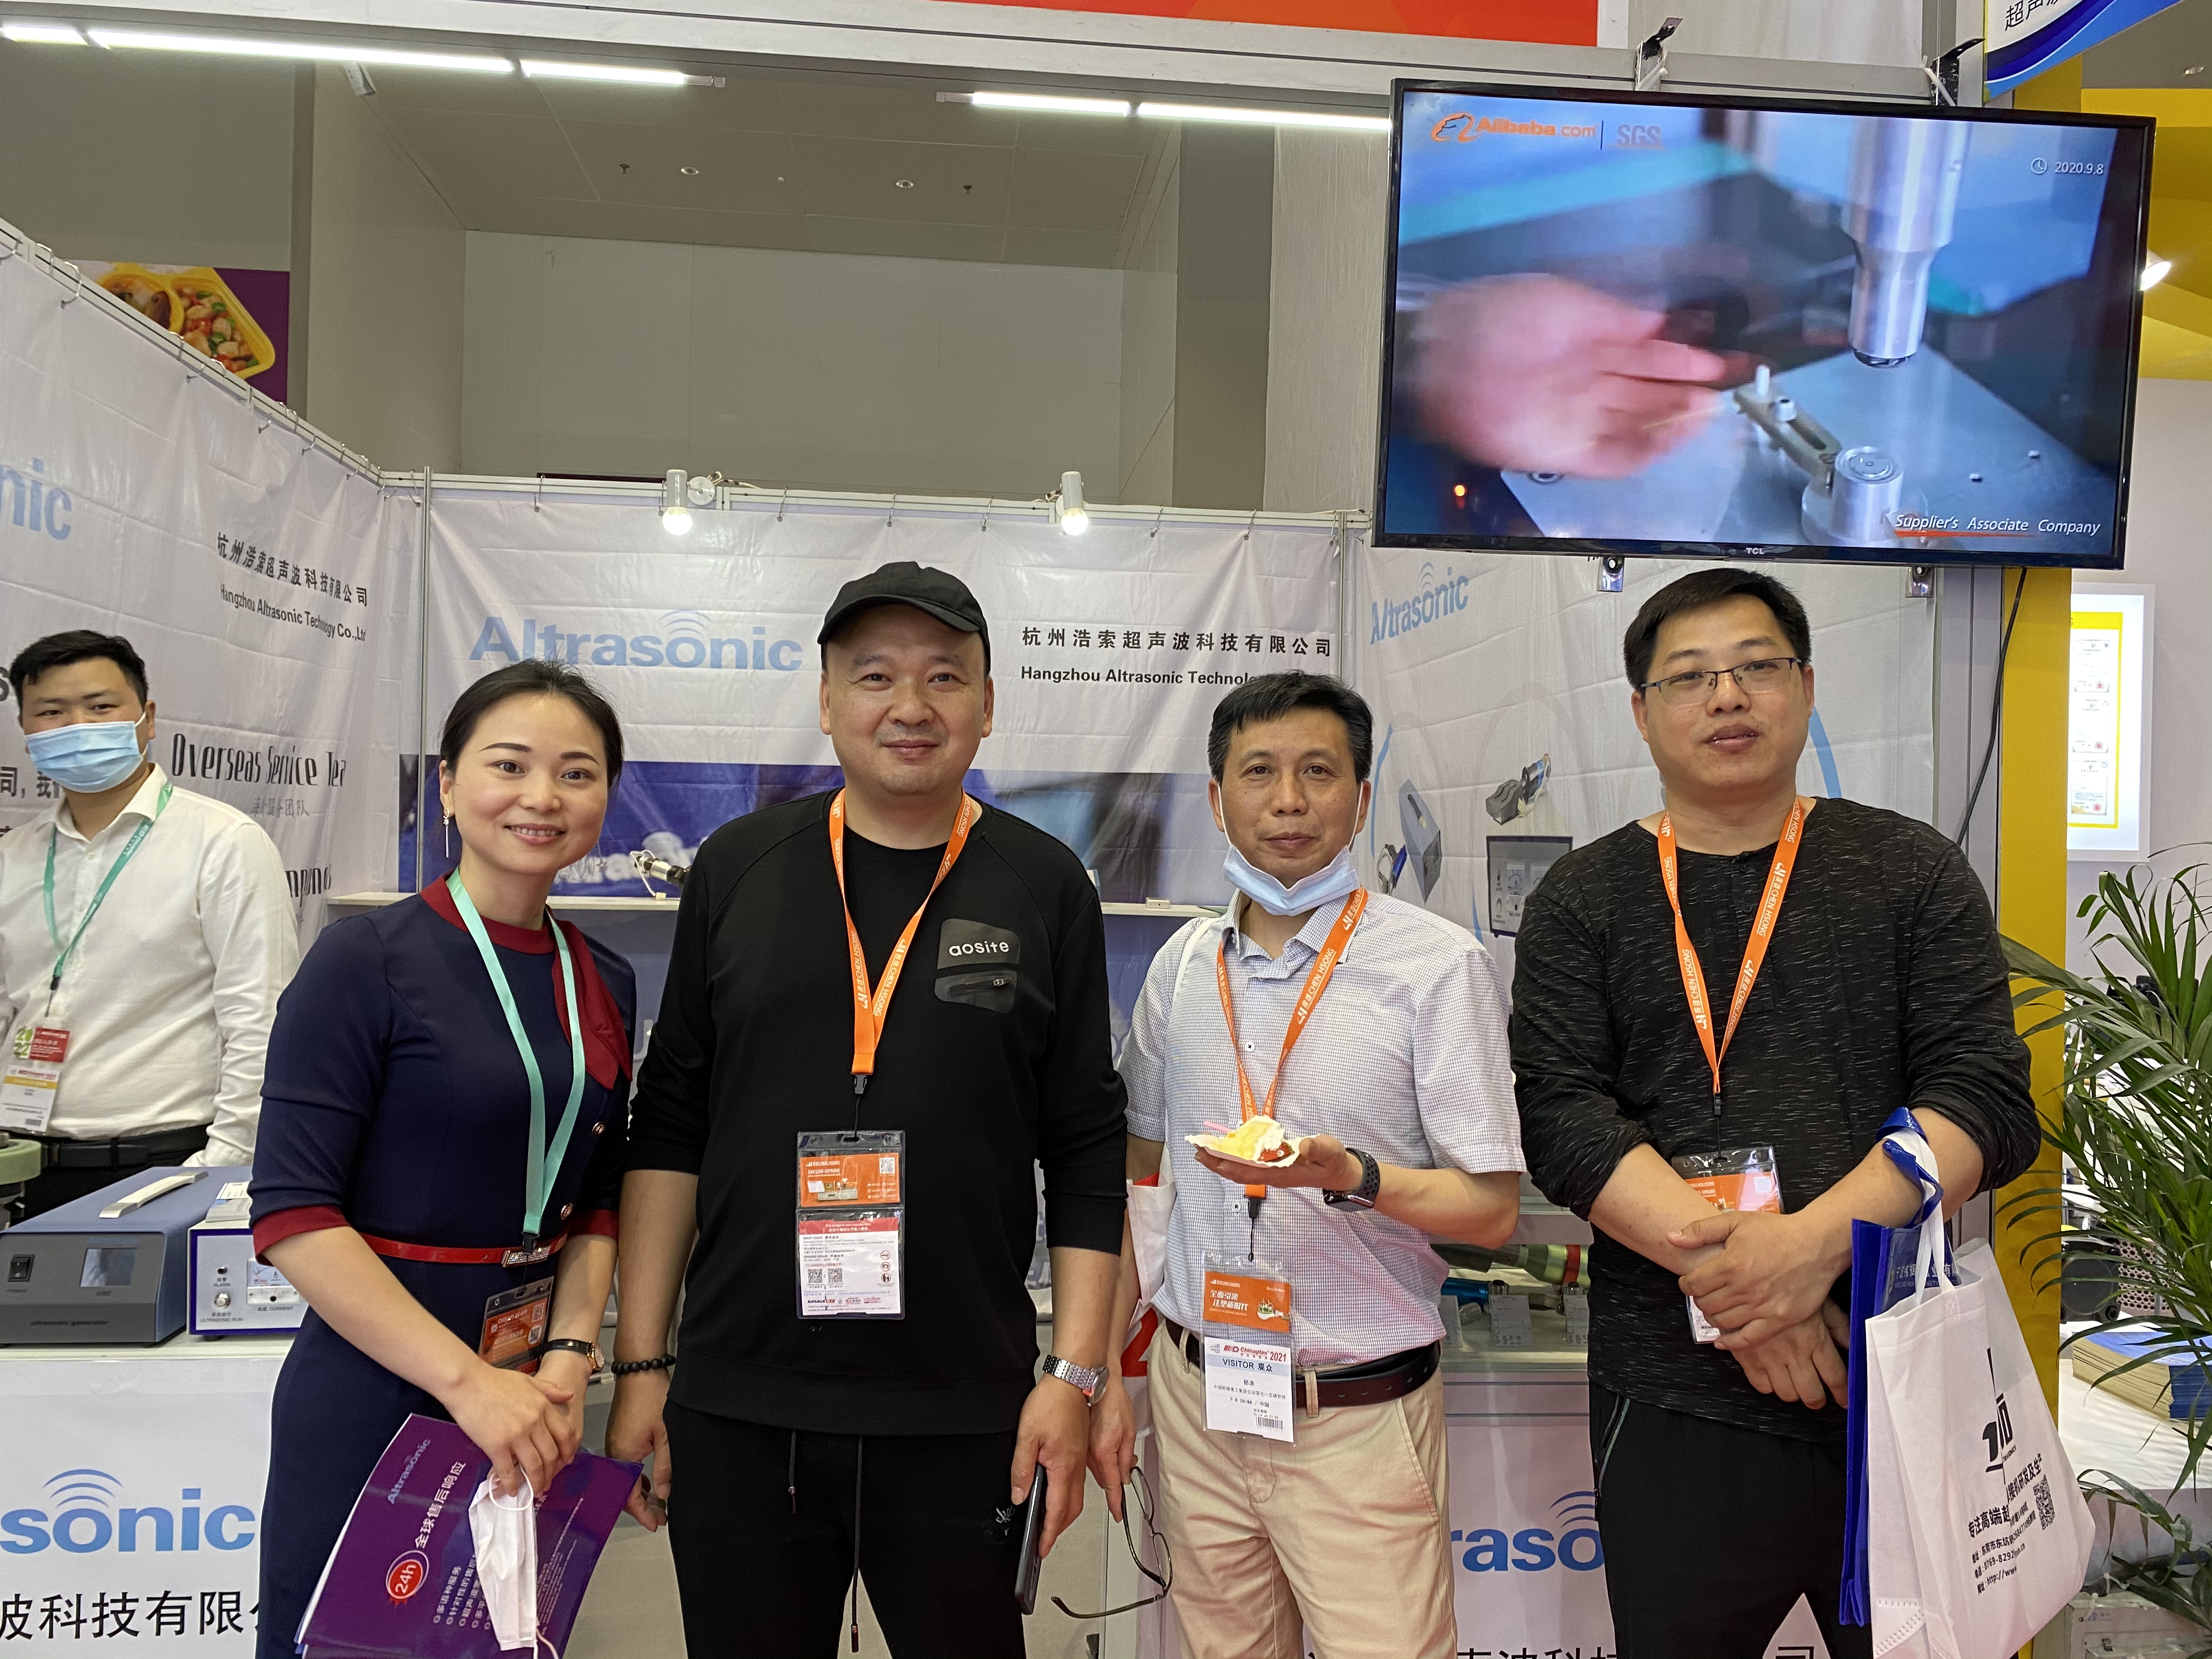  ChinaPlas in Shenzhen ---- Willkommen Kommen Sie zu Besuch Ultraschall 